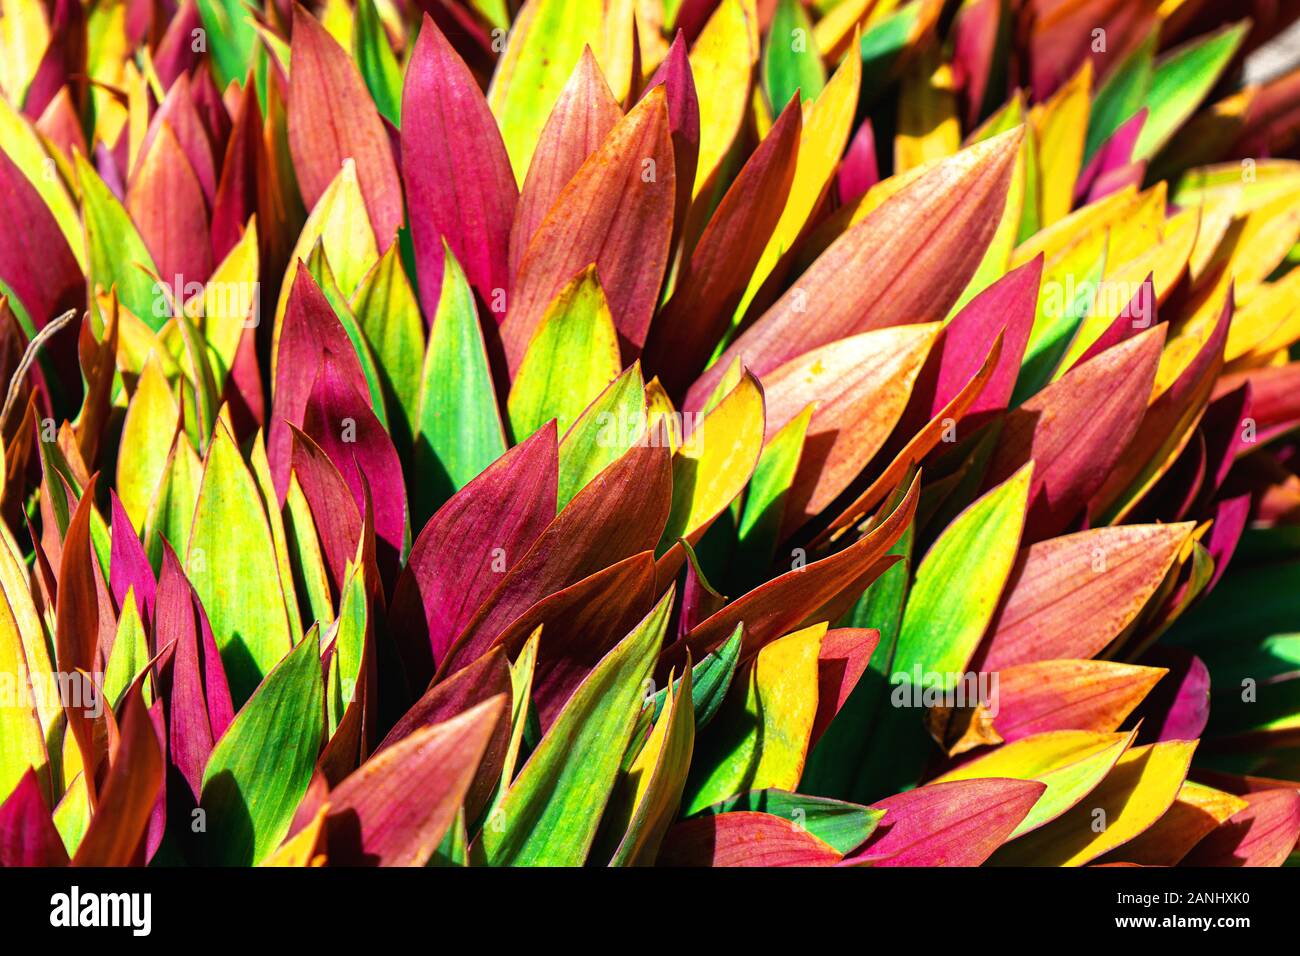 Belles feuilles tropicaux colorés. Concept d'été. L'Afrique, l'île de Zanzibar. Cordyline fruticosa Ti plante ou feuilles, feuillages exotiques colorées. Banque D'Images